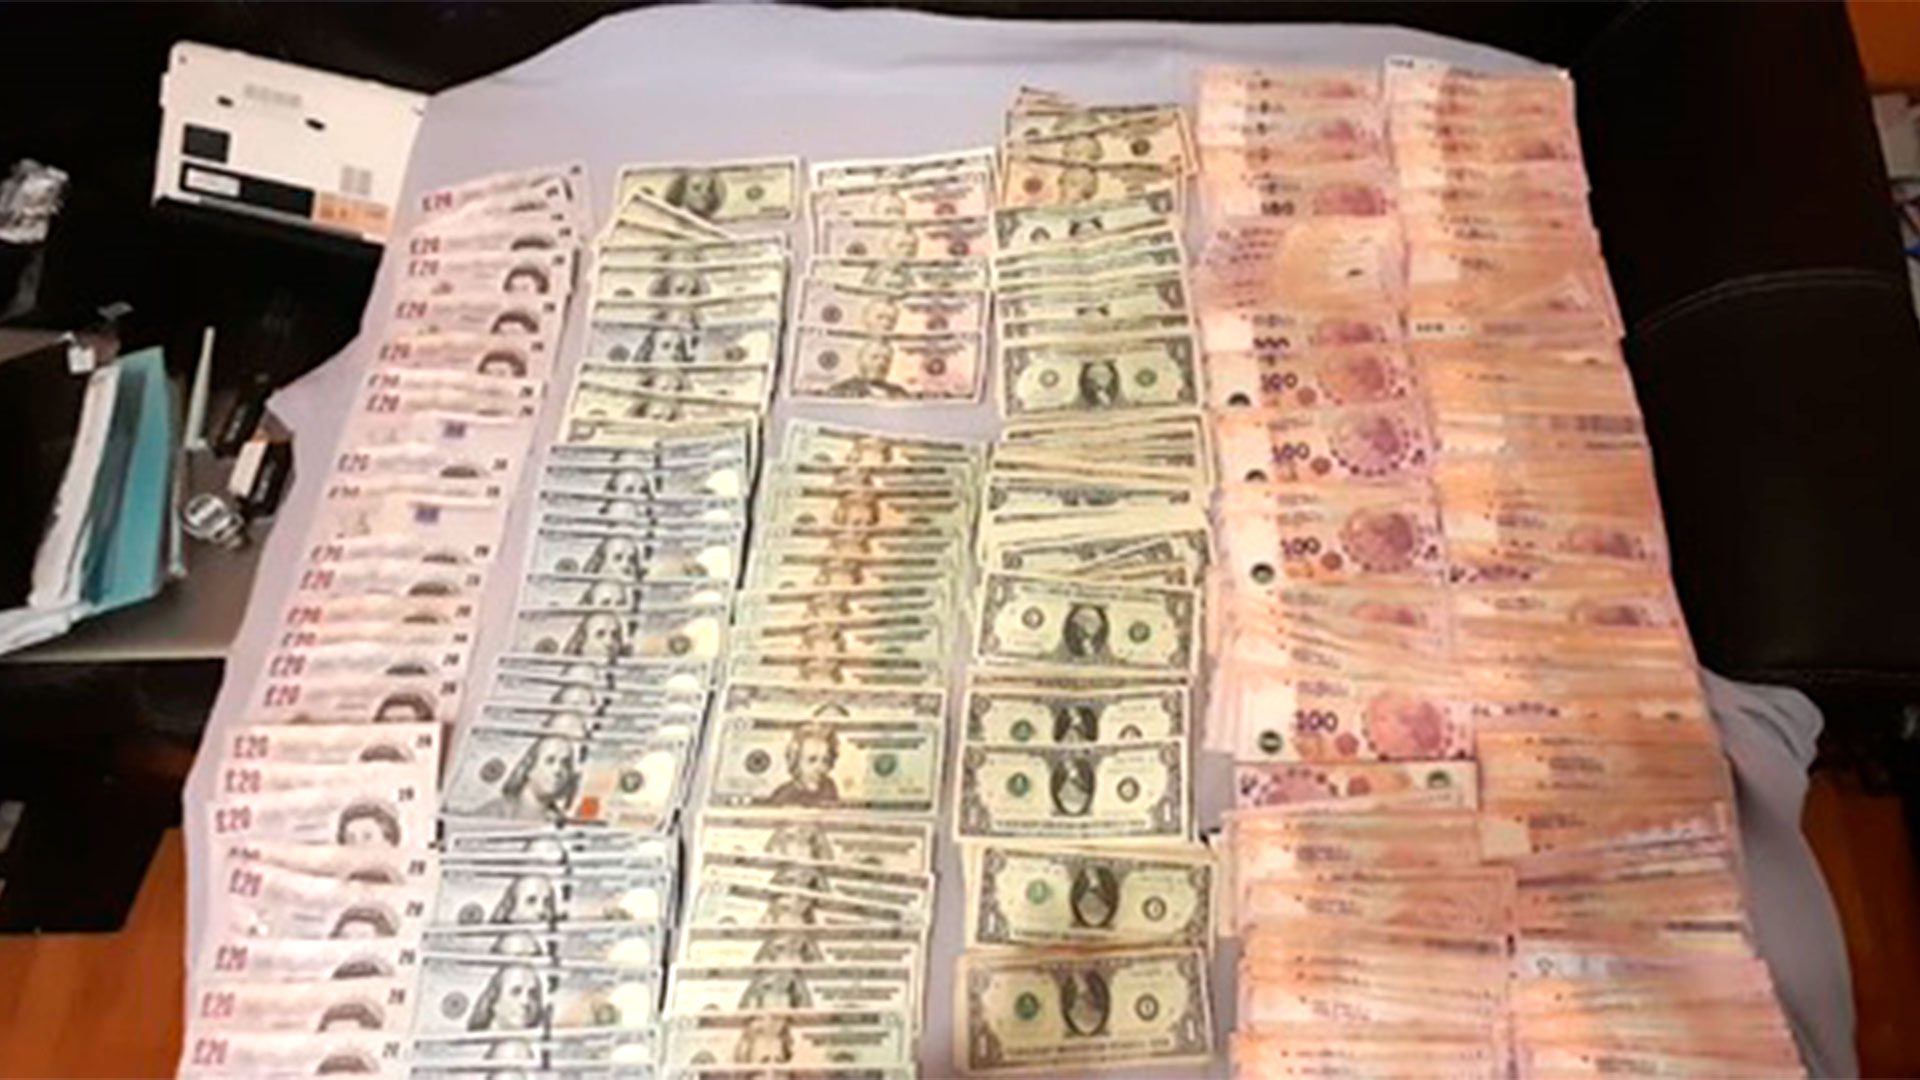 A la organización criminal le descubrieron una importante cantidad de dinero distribuido en diferentes tipos de moneda